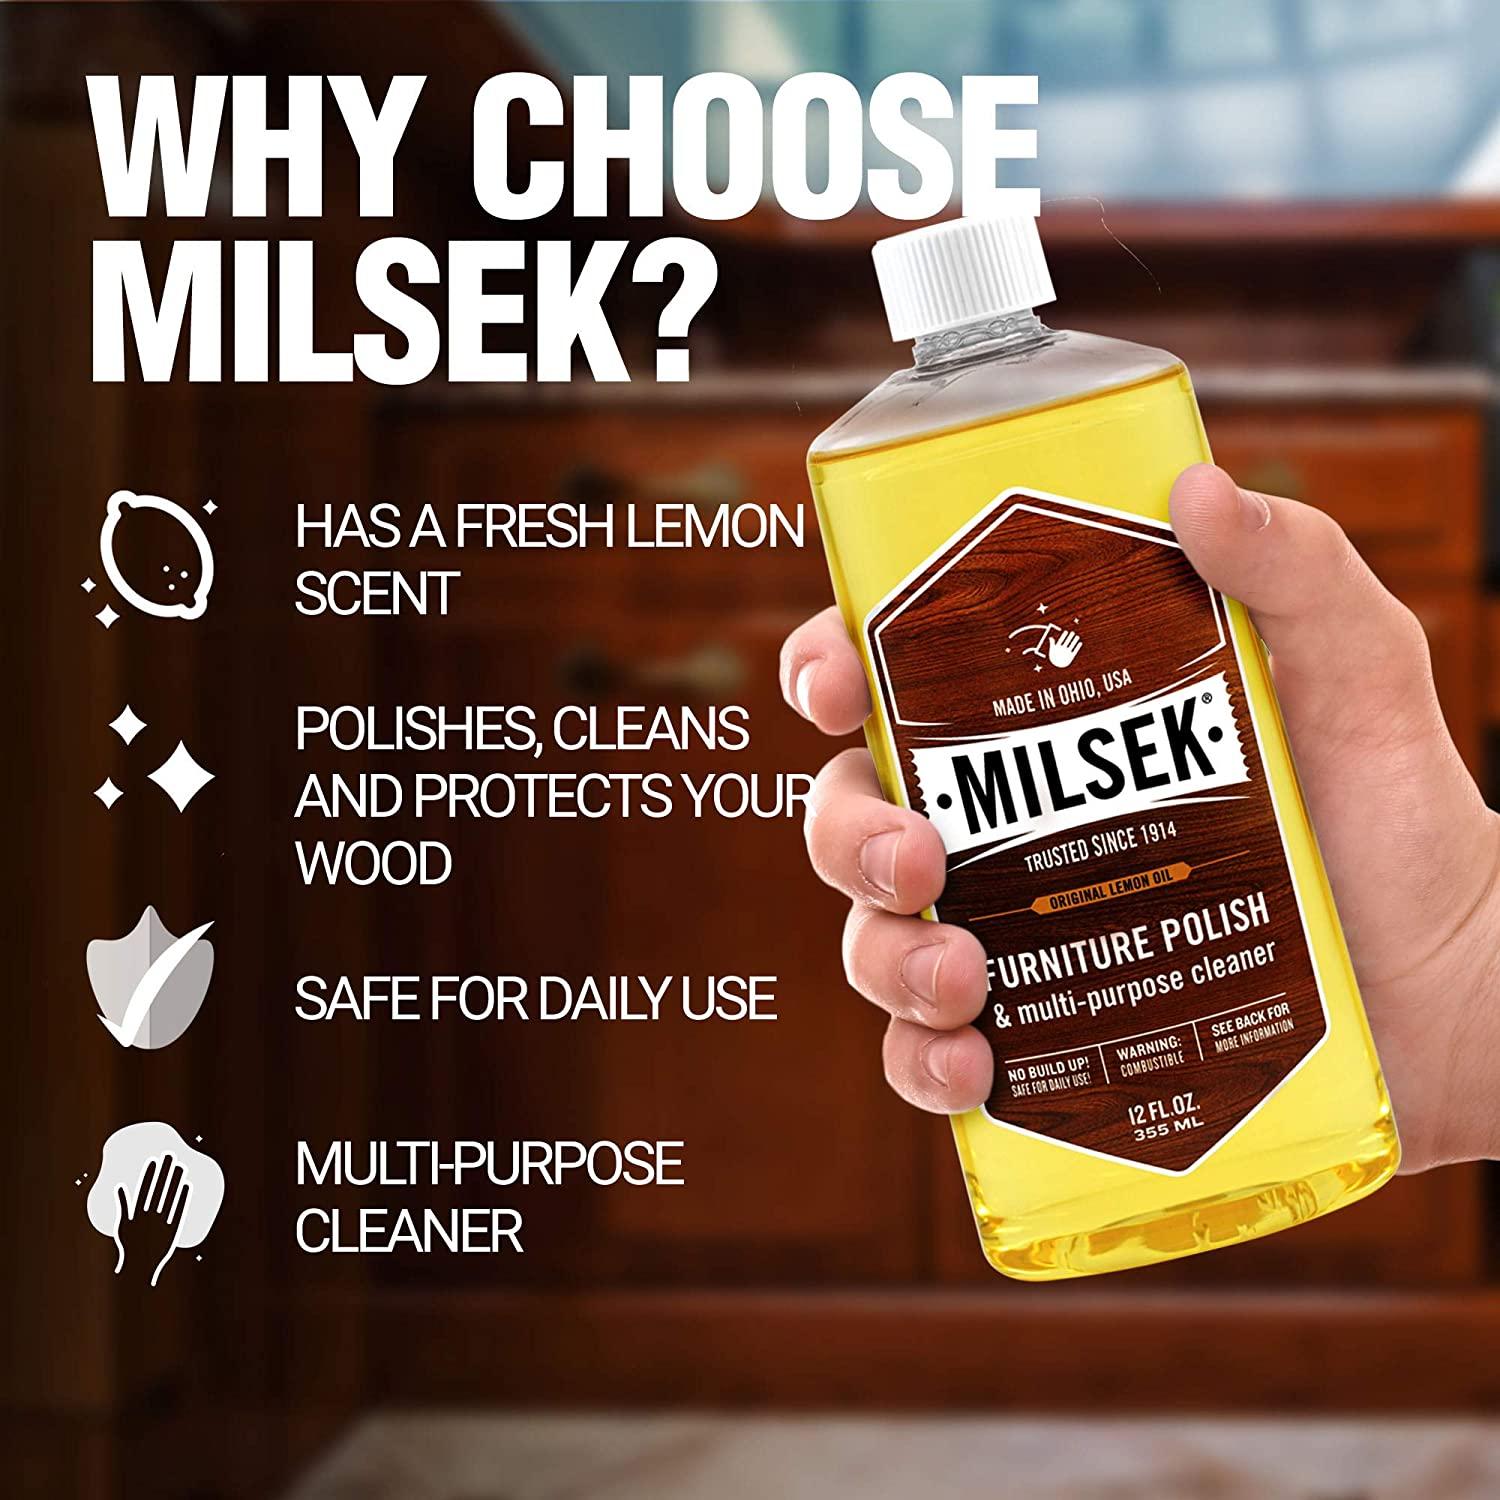 Milsek Furniture Polish & Multi-Purpose Cleaner, Original Lemon Oil - 12 fl oz